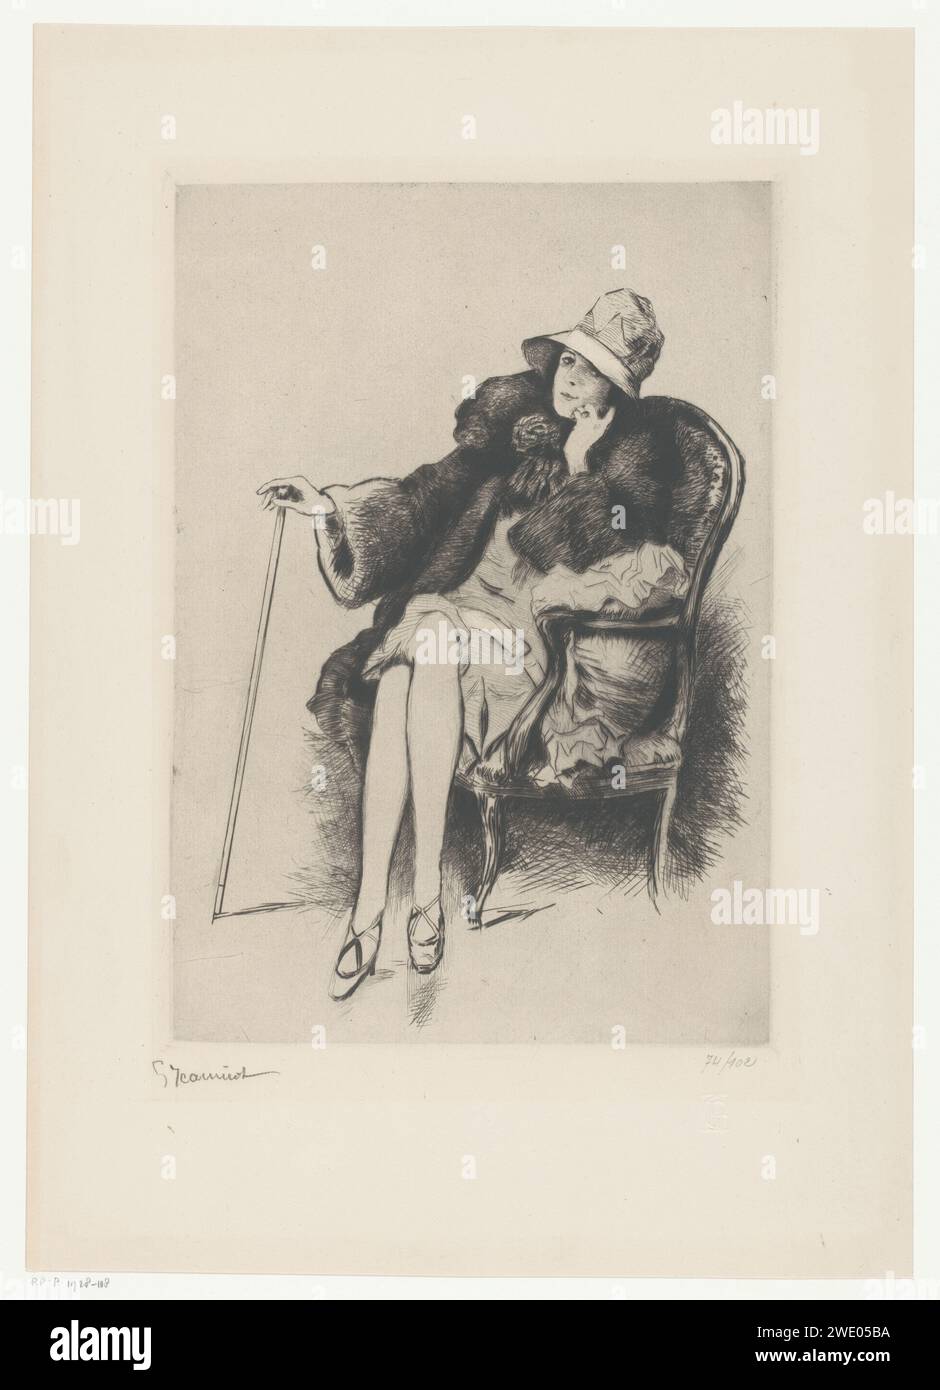 Frau mit Hut in einem Sessel, Pierre Georges Jeanniot, 1920 - 1928 Druck Junge Dame, sitzend im Sessel, die linke Hand unter den Verwandten, die rechte Hand lehnt sich auf einen Gehstock mit einem Knopf. Sie trägt einen Pelzmantel und ein kurzes Kleid mit niedriger Taille, Schuhe mit Absatzschuhen und überkreuzten Riemen an ihren Füßen. Topfmütze mit breiter Kante. Kleidung 1920-1930. Frankreich Papier Trockenspitze / Ätzen / Gravur Kleidung, Kostüm (+ Damenkleidung). Erwachsene Frau. Sitzende Figur - AA - weibliche menschliche Figur. Gehstock, Personal Stockfoto